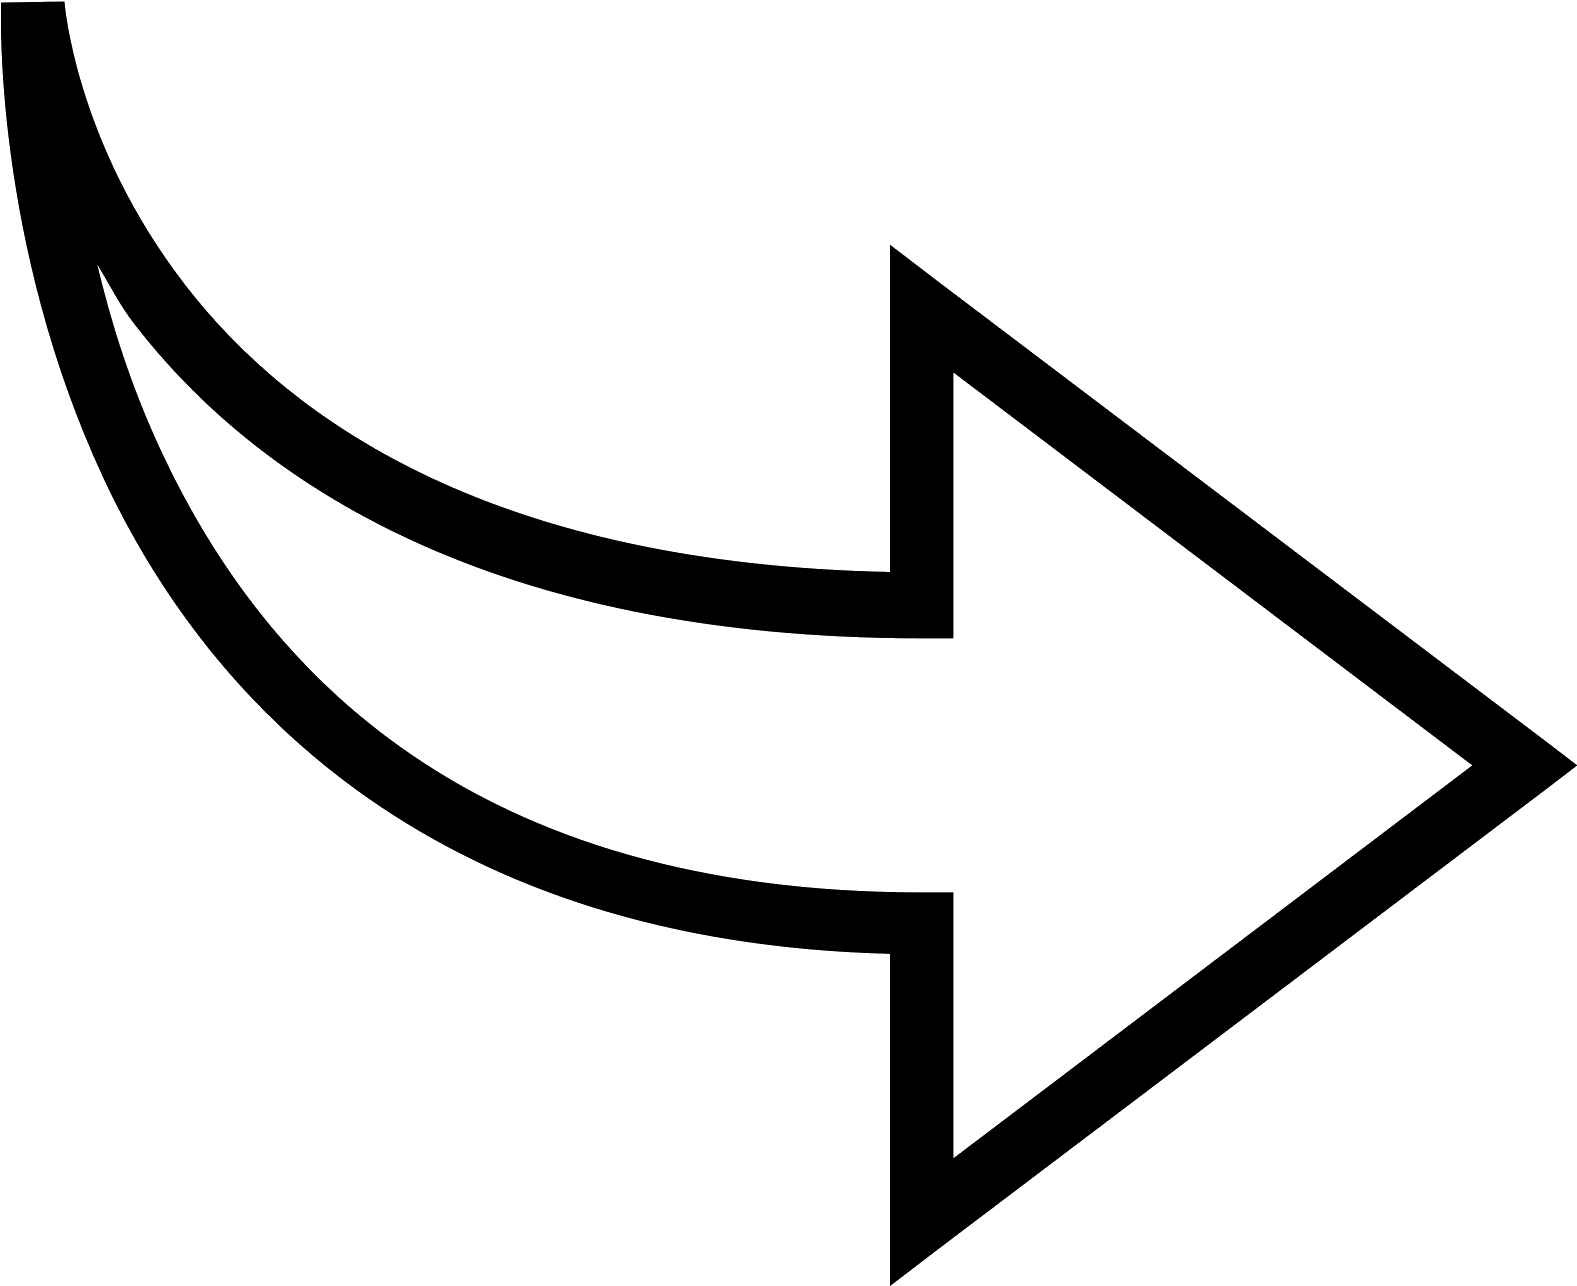 Immagine di PNG della freccia curva di vettore